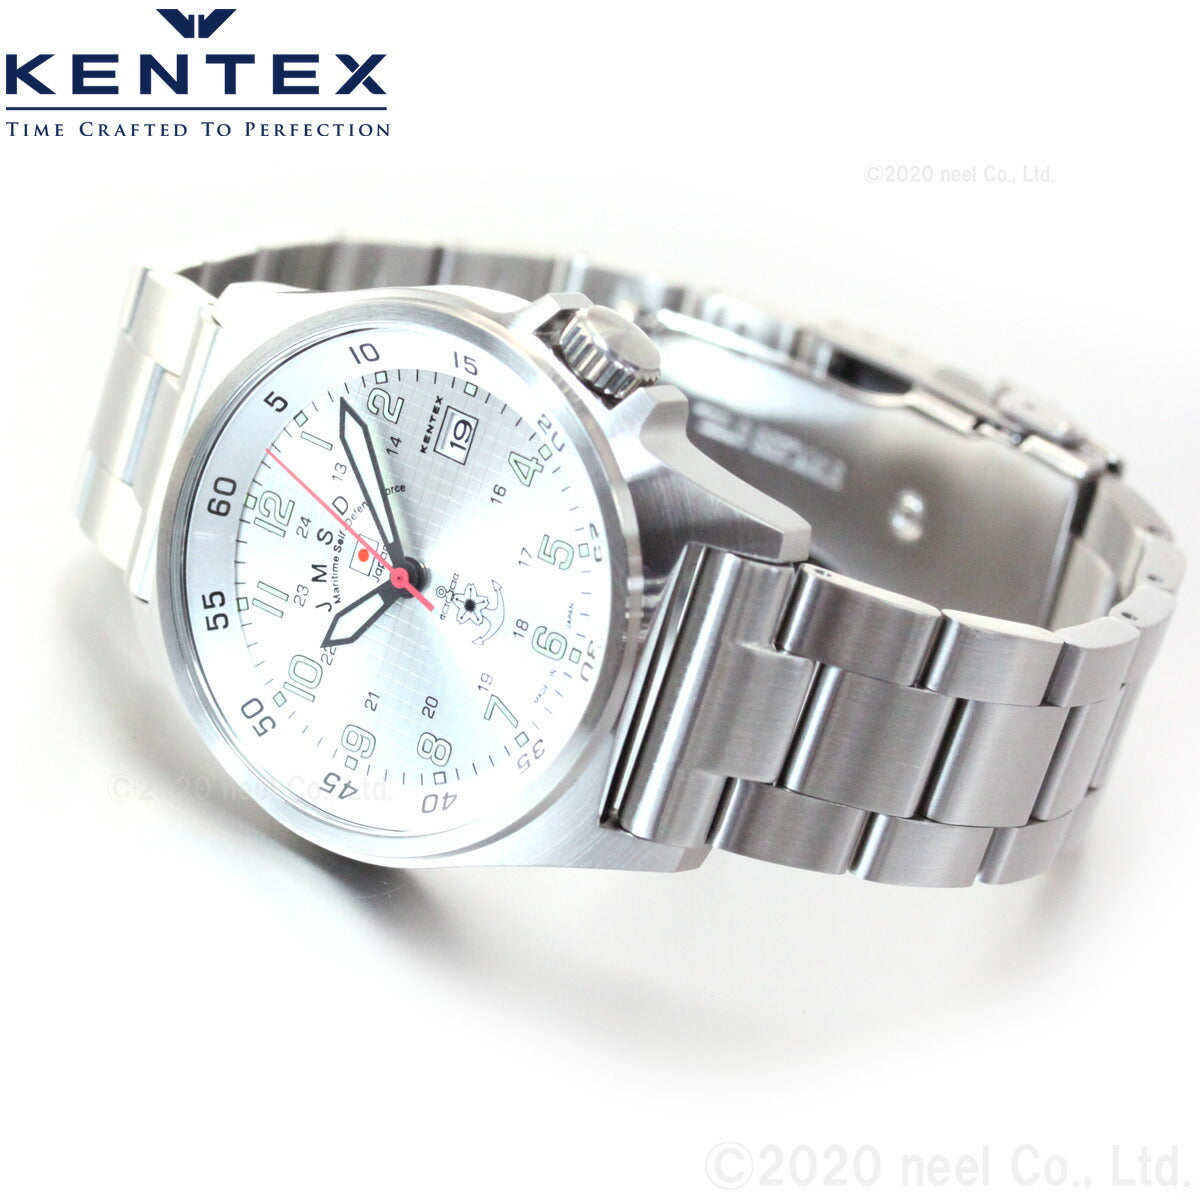 KENTEX ケンテックス 腕時計 メンズ JSDF スタンダード 自衛隊モデル 海上自衛隊 S455M-11【正規品】【送料無料】